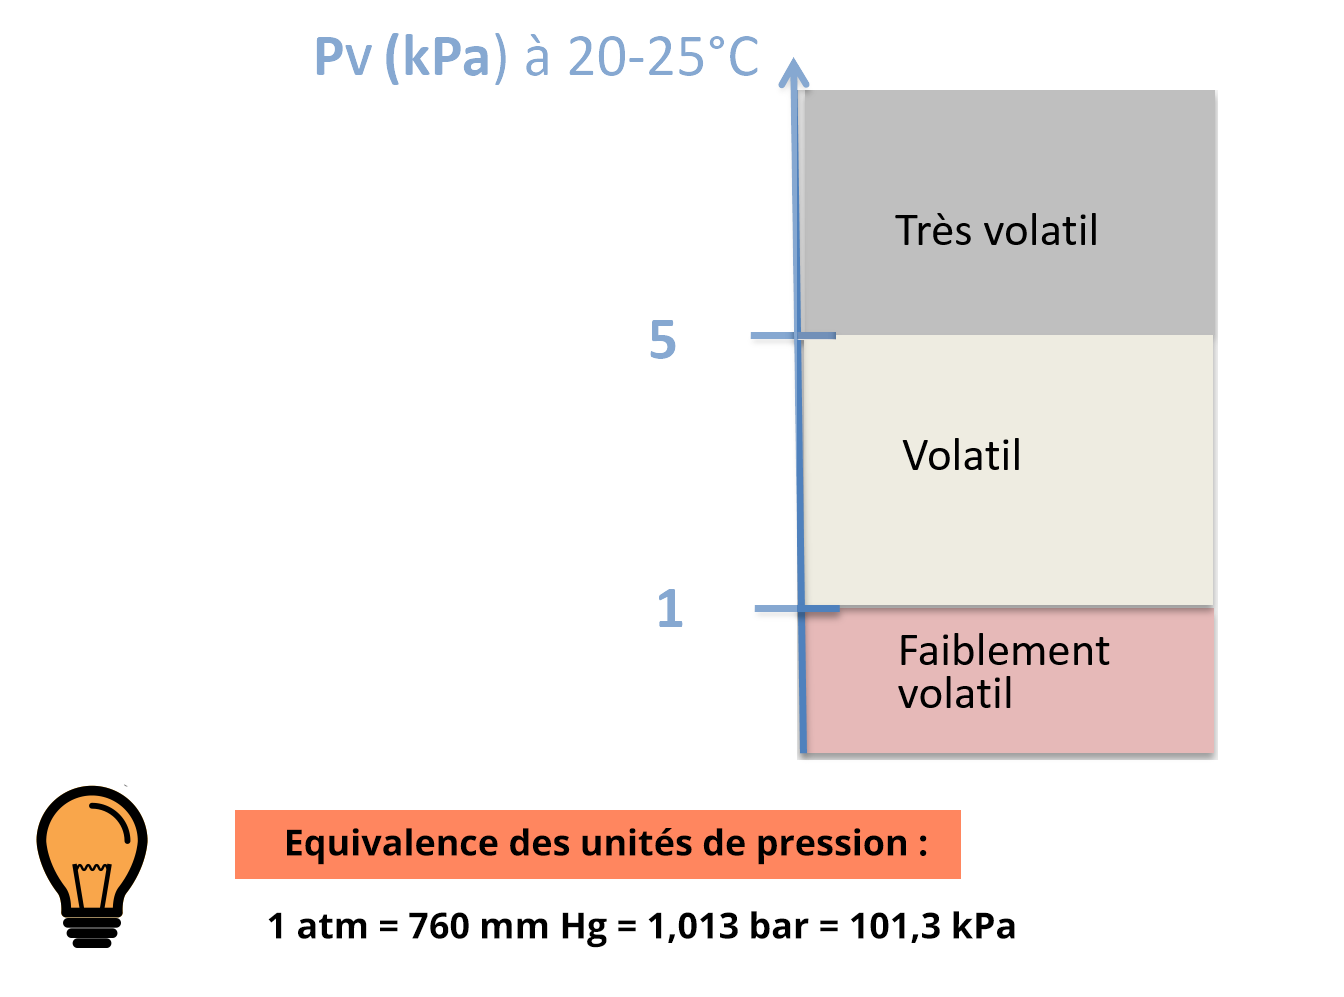 Echelle de Pv (kPa) à 20-25°C. En dessous de 1 : faiblement volatil. De 1 à 5 : Volatil. Au delà de 5 : Très volatil. Equivalence des unités de pression : 1 atm = 760 mm Hg = 1,013 bar = 101,3 kPa